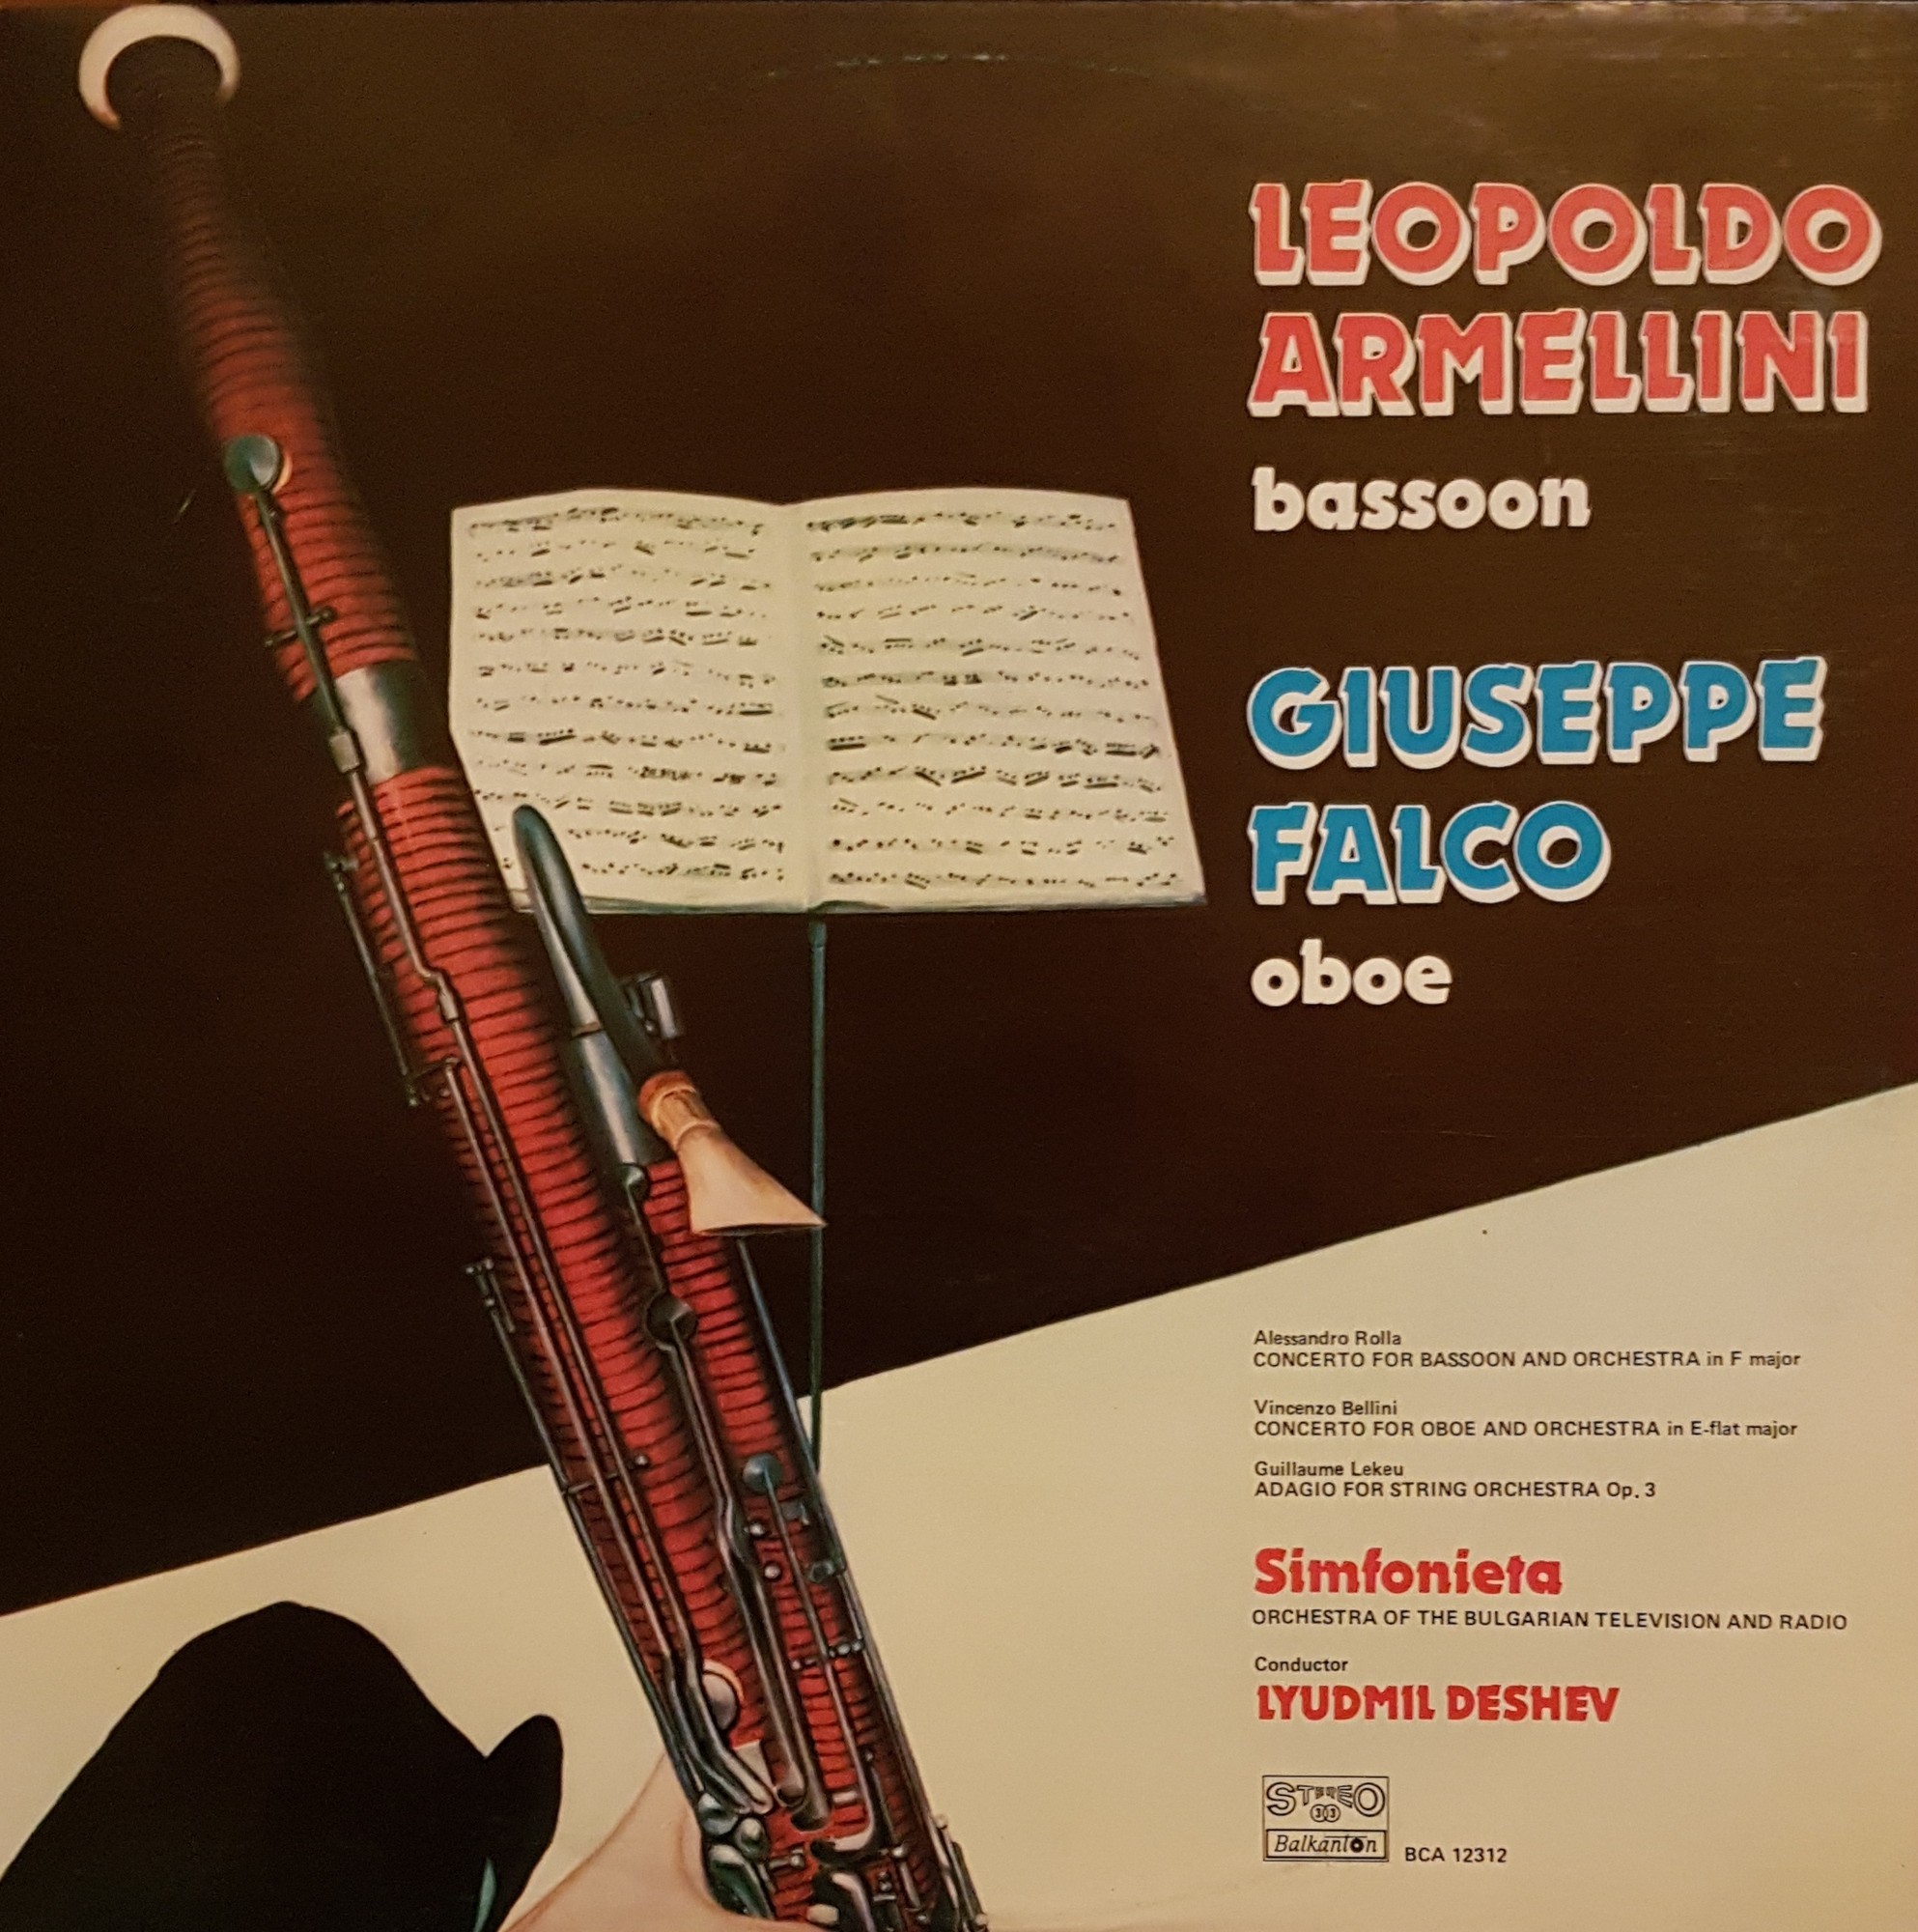 Leopoldo Armelini - bassoon, Giuseppe Falco - oboe